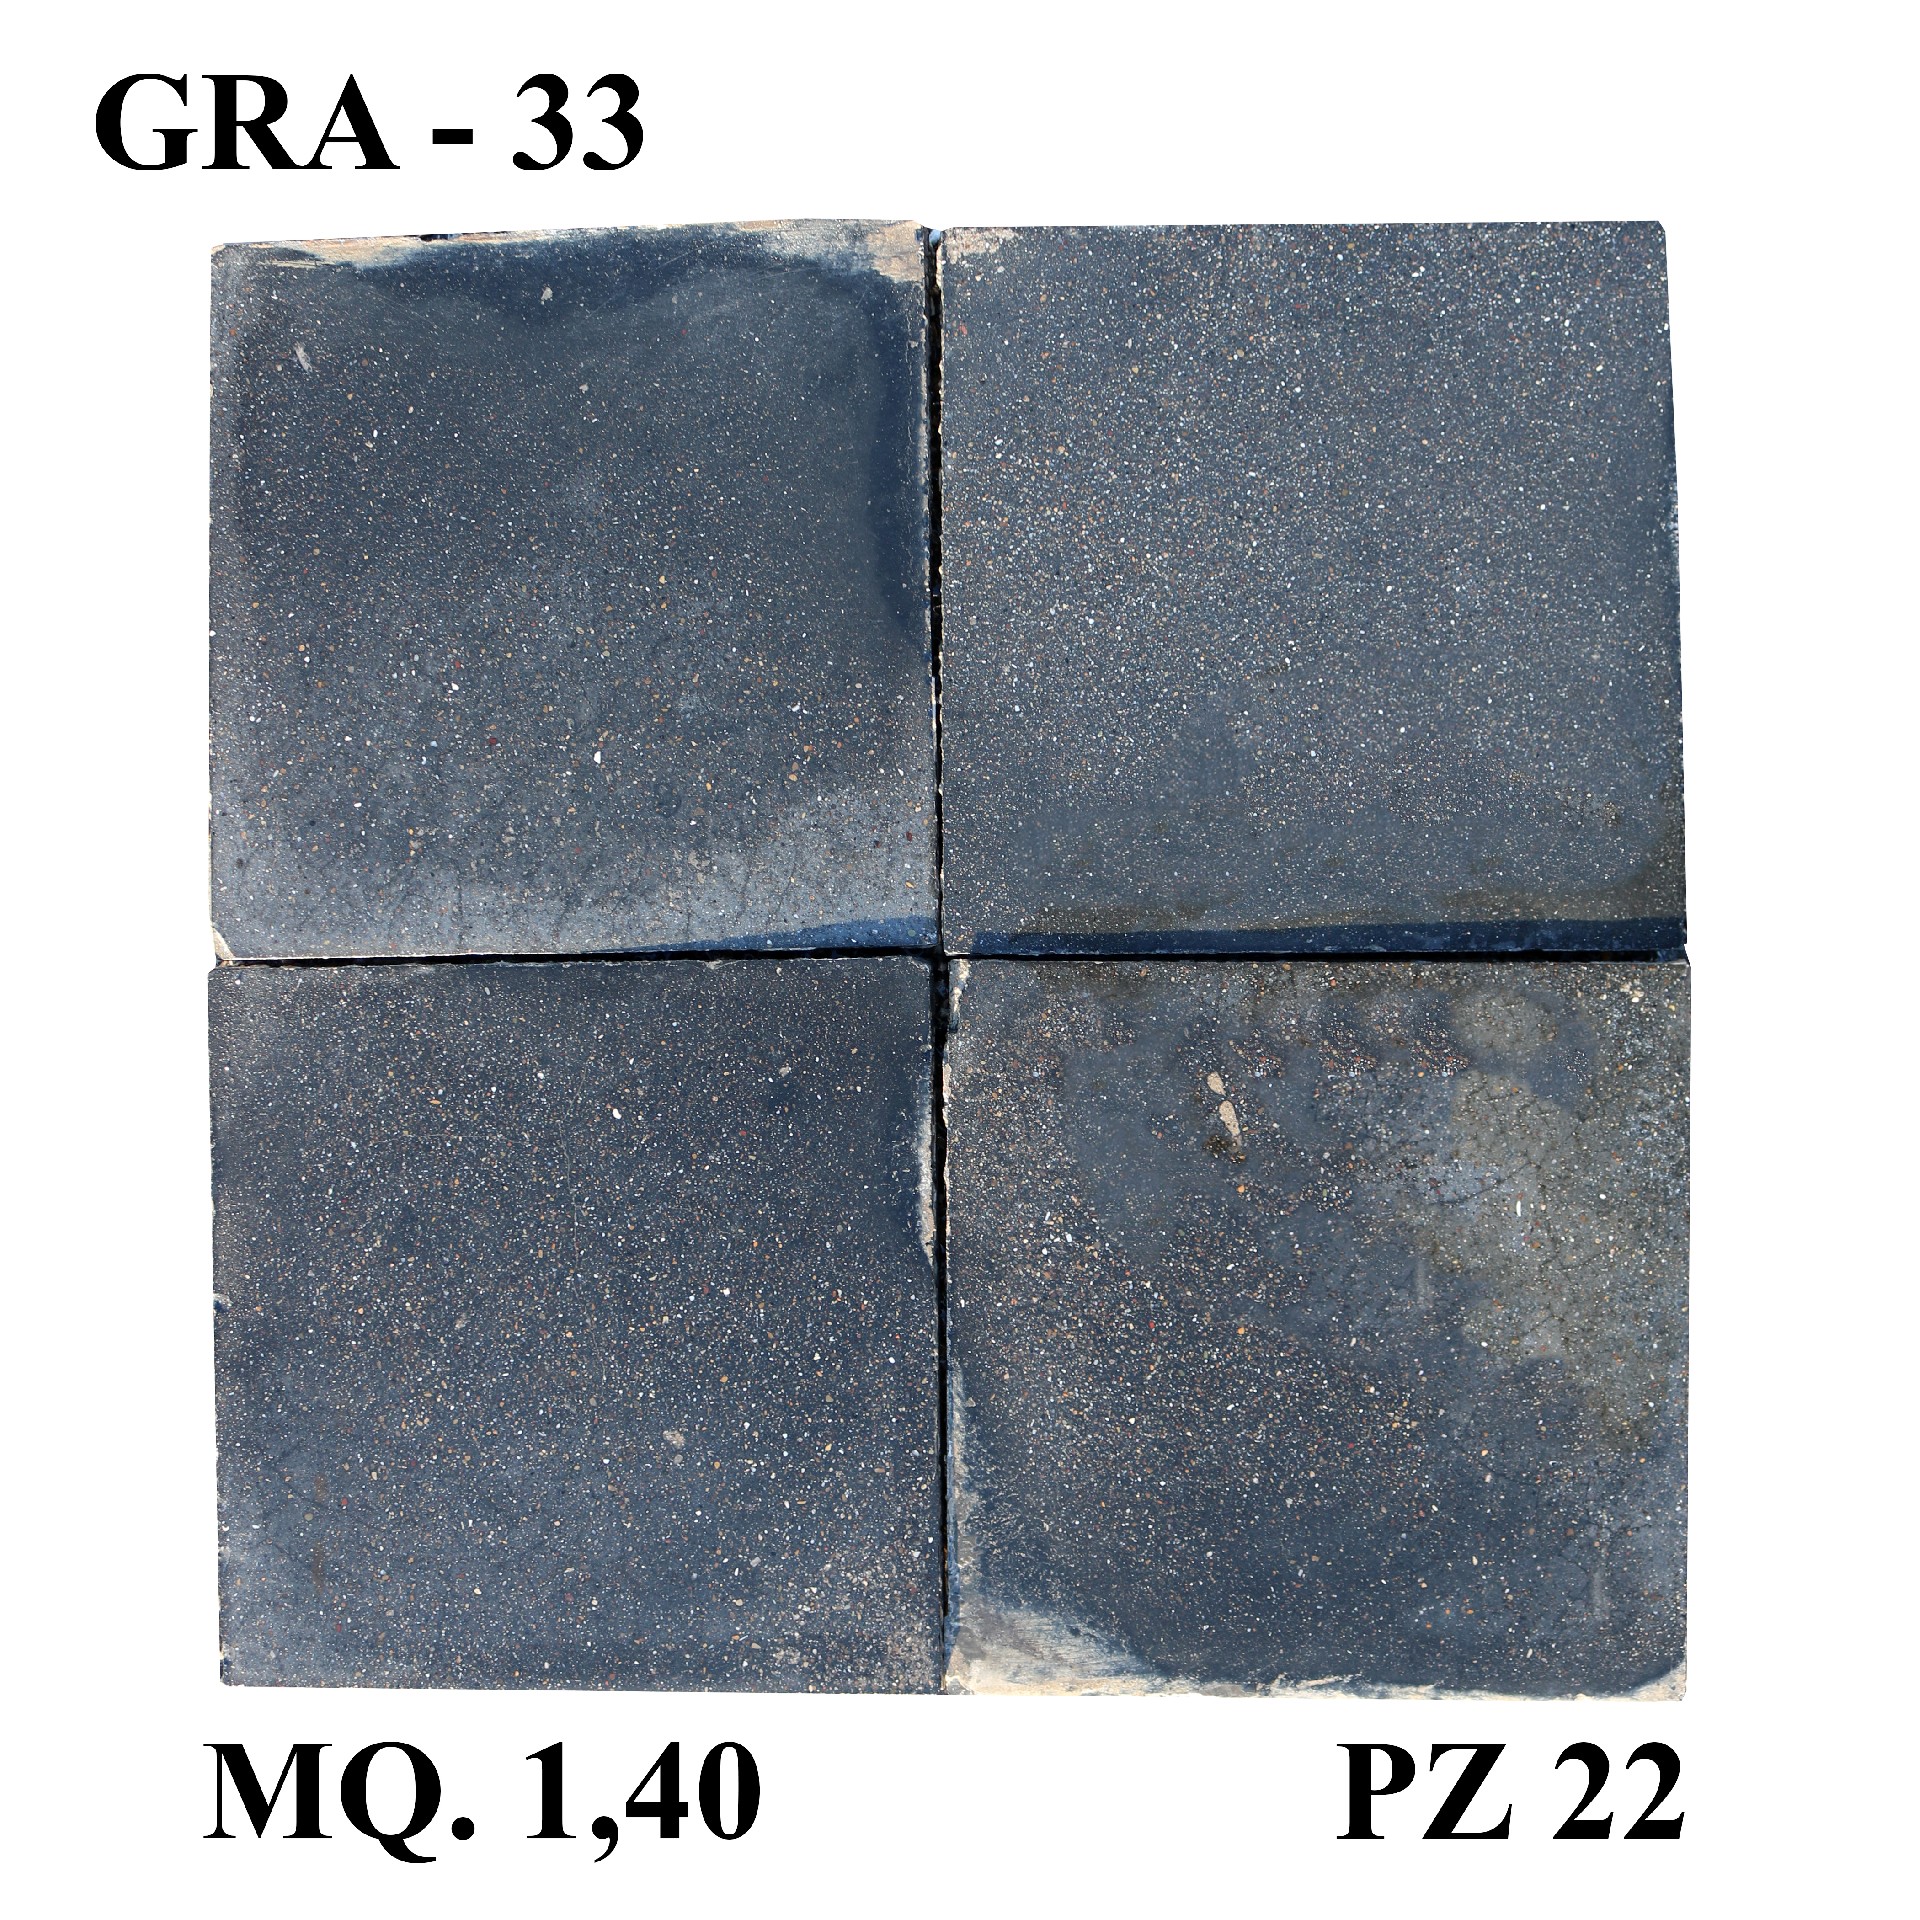 Antica pavimentazione in graniglia cm 25x25 - 1